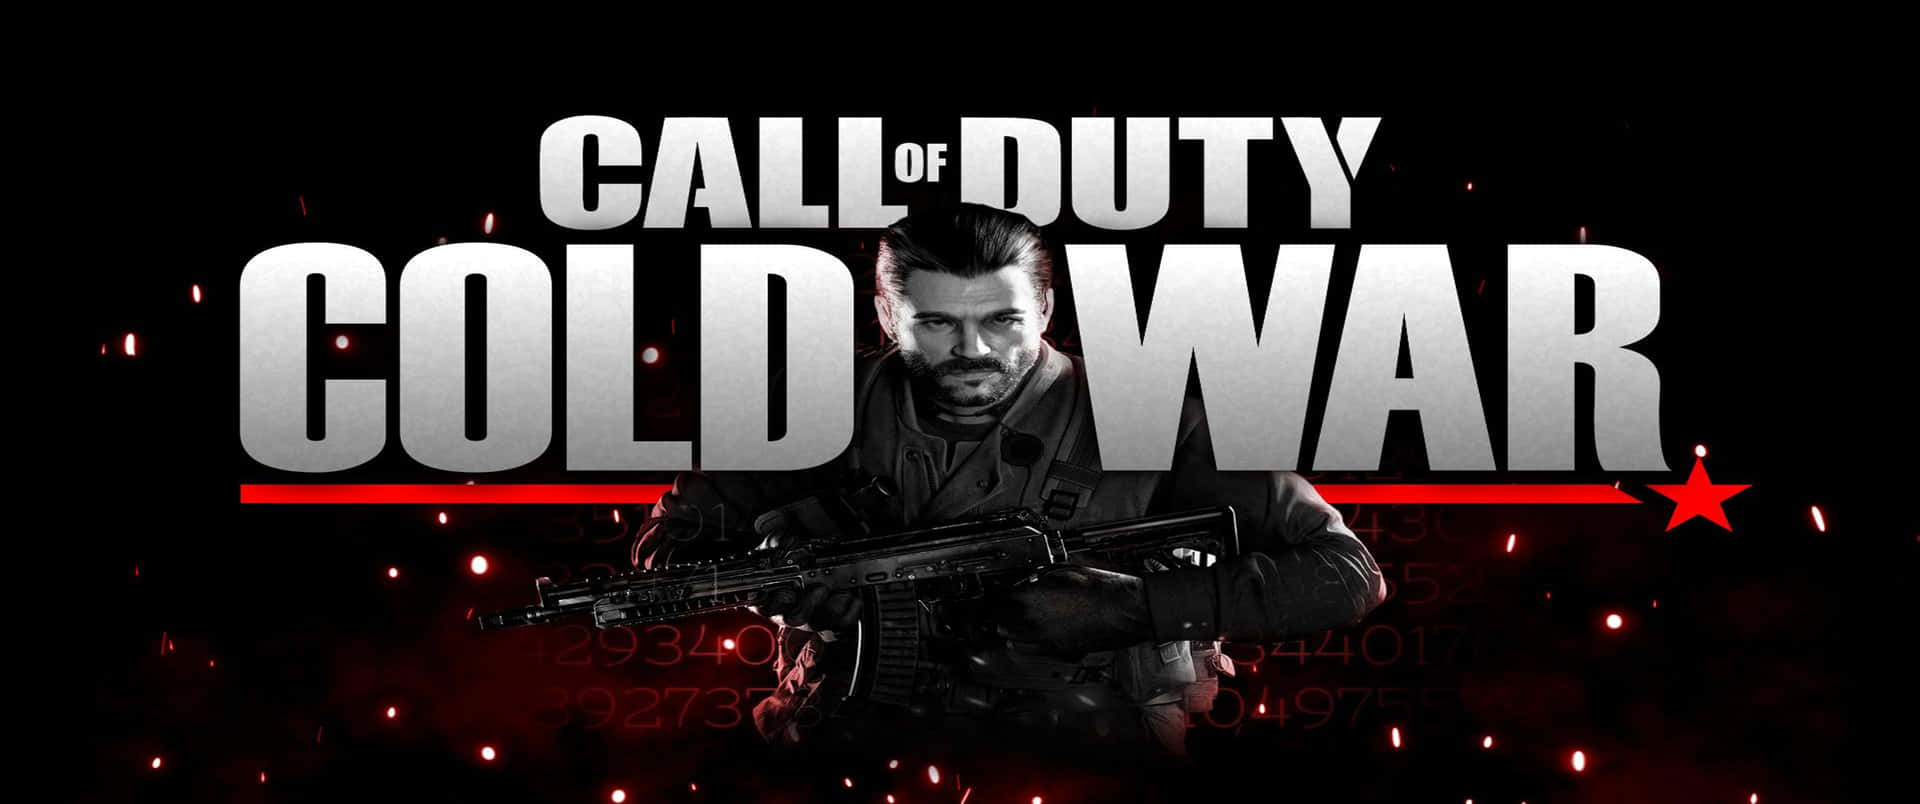 Impresionantefondo De Pantalla De Call Of Duty Black Ops Cold War Con Resolución 3440x1440p.